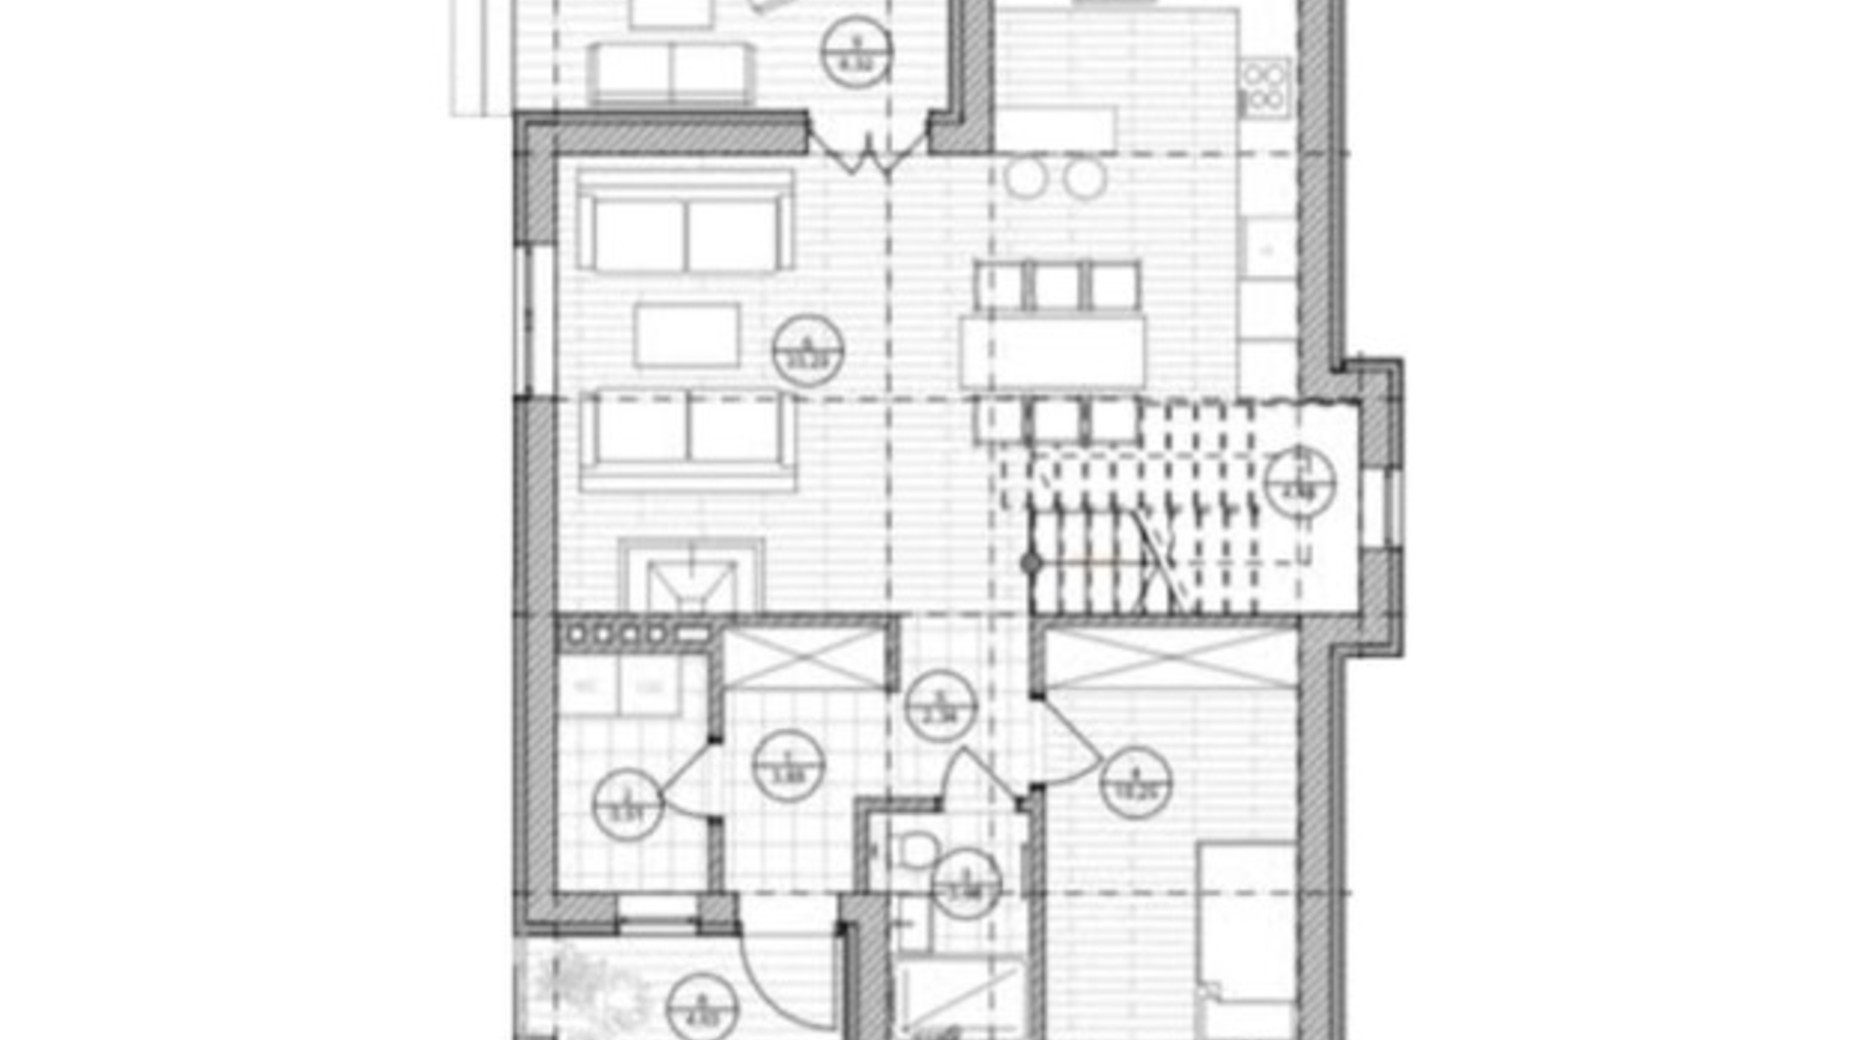 Планировка 4-комнатной квартиры в Таунхаус ул. Вишневая, 9 130 м², фото 365765